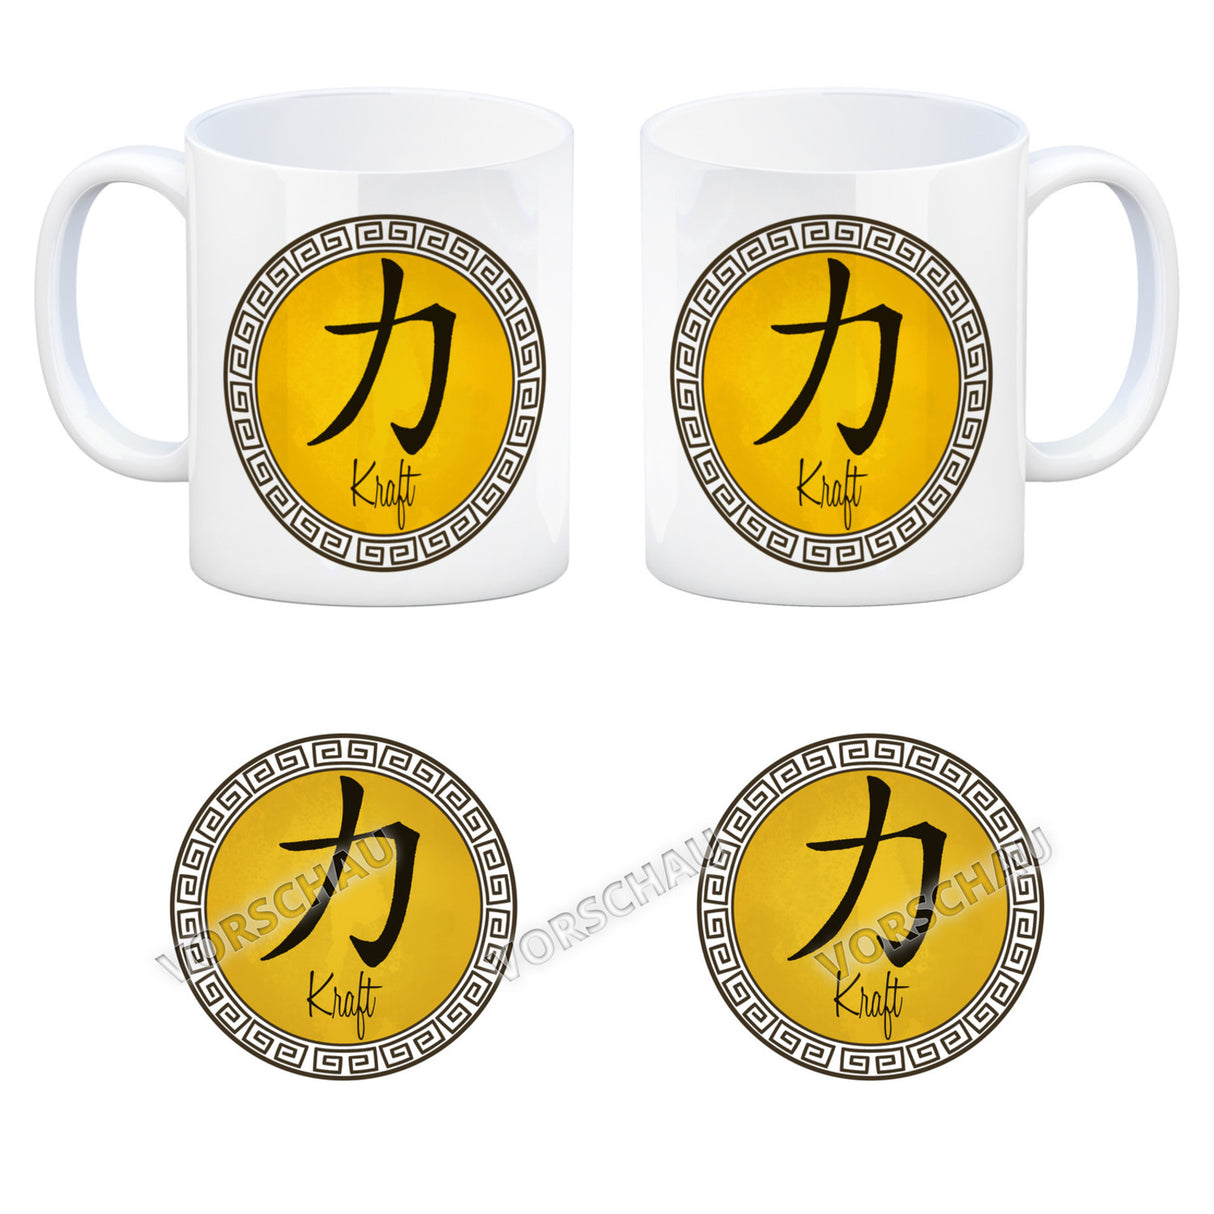 Chinesisches Zeichen für langes Leben Kaffeebecher